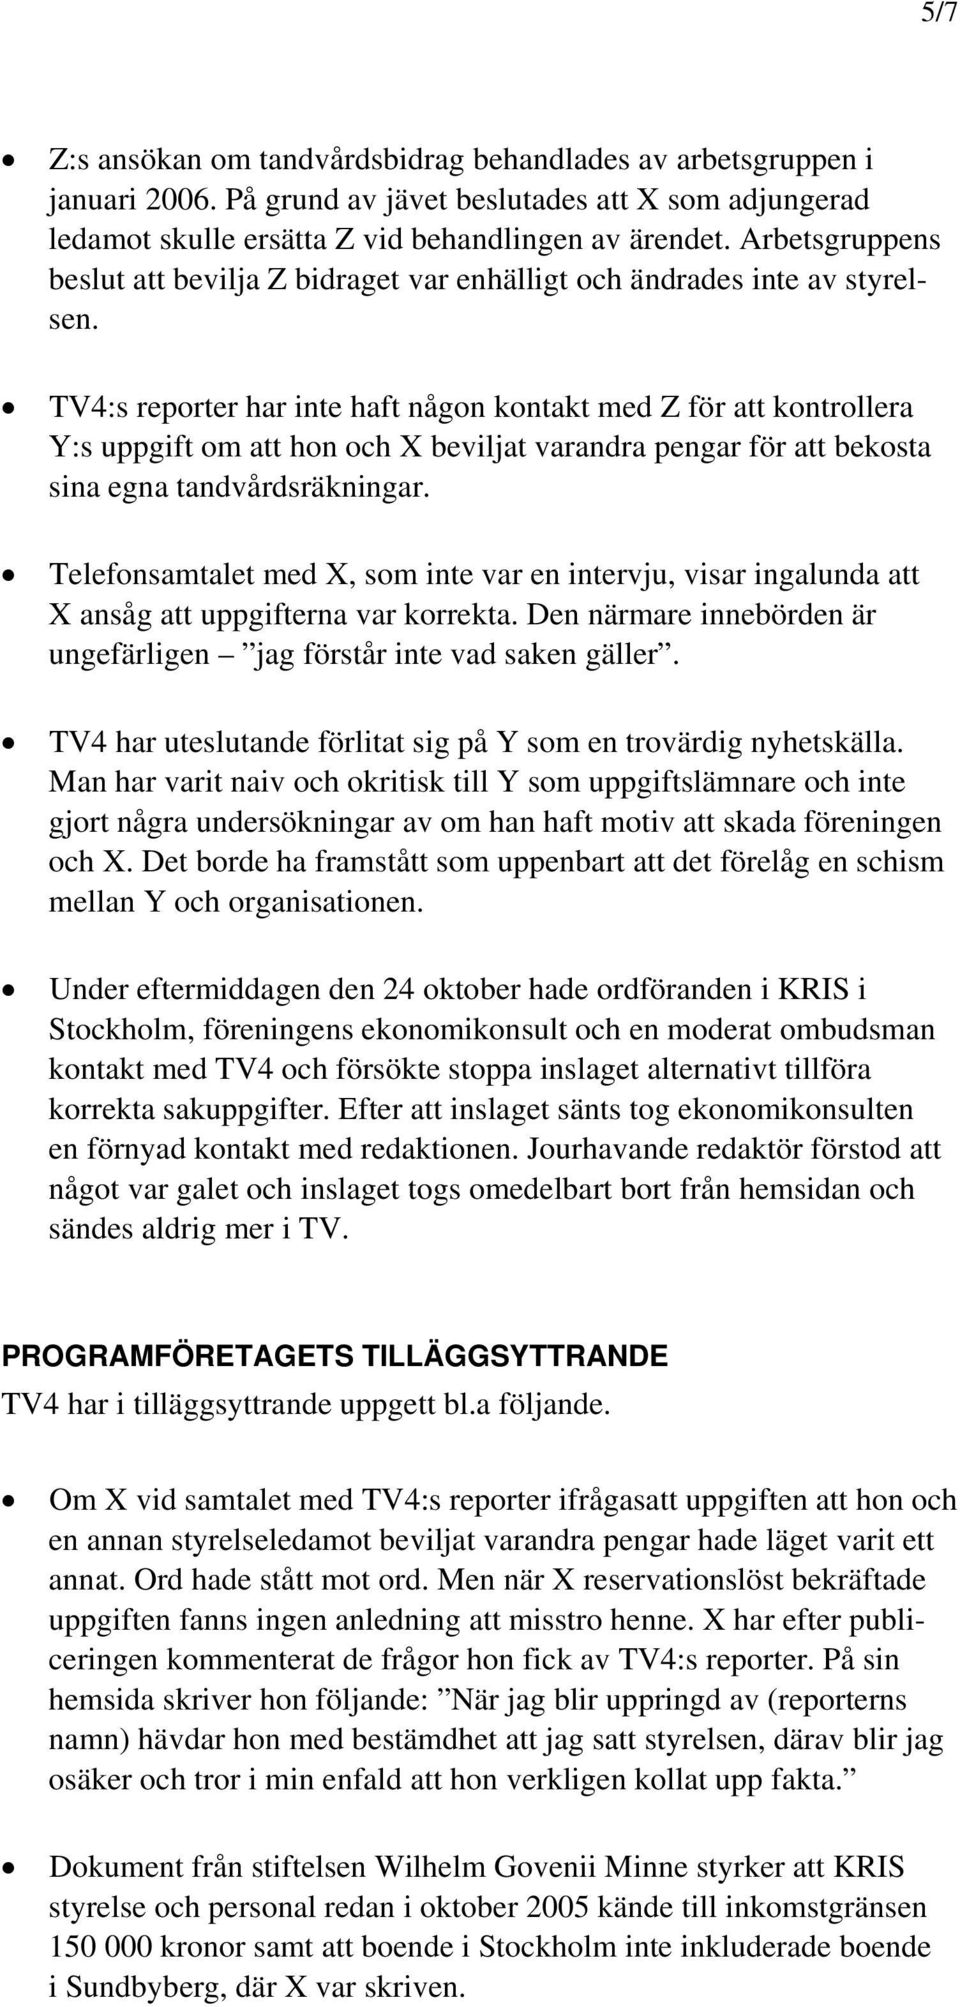 TV4:s reporter har inte haft någon kontakt med Z för att kontrollera Y:s uppgift om att hon och X beviljat varandra pengar för att bekosta sina egna tandvårdsräkningar.